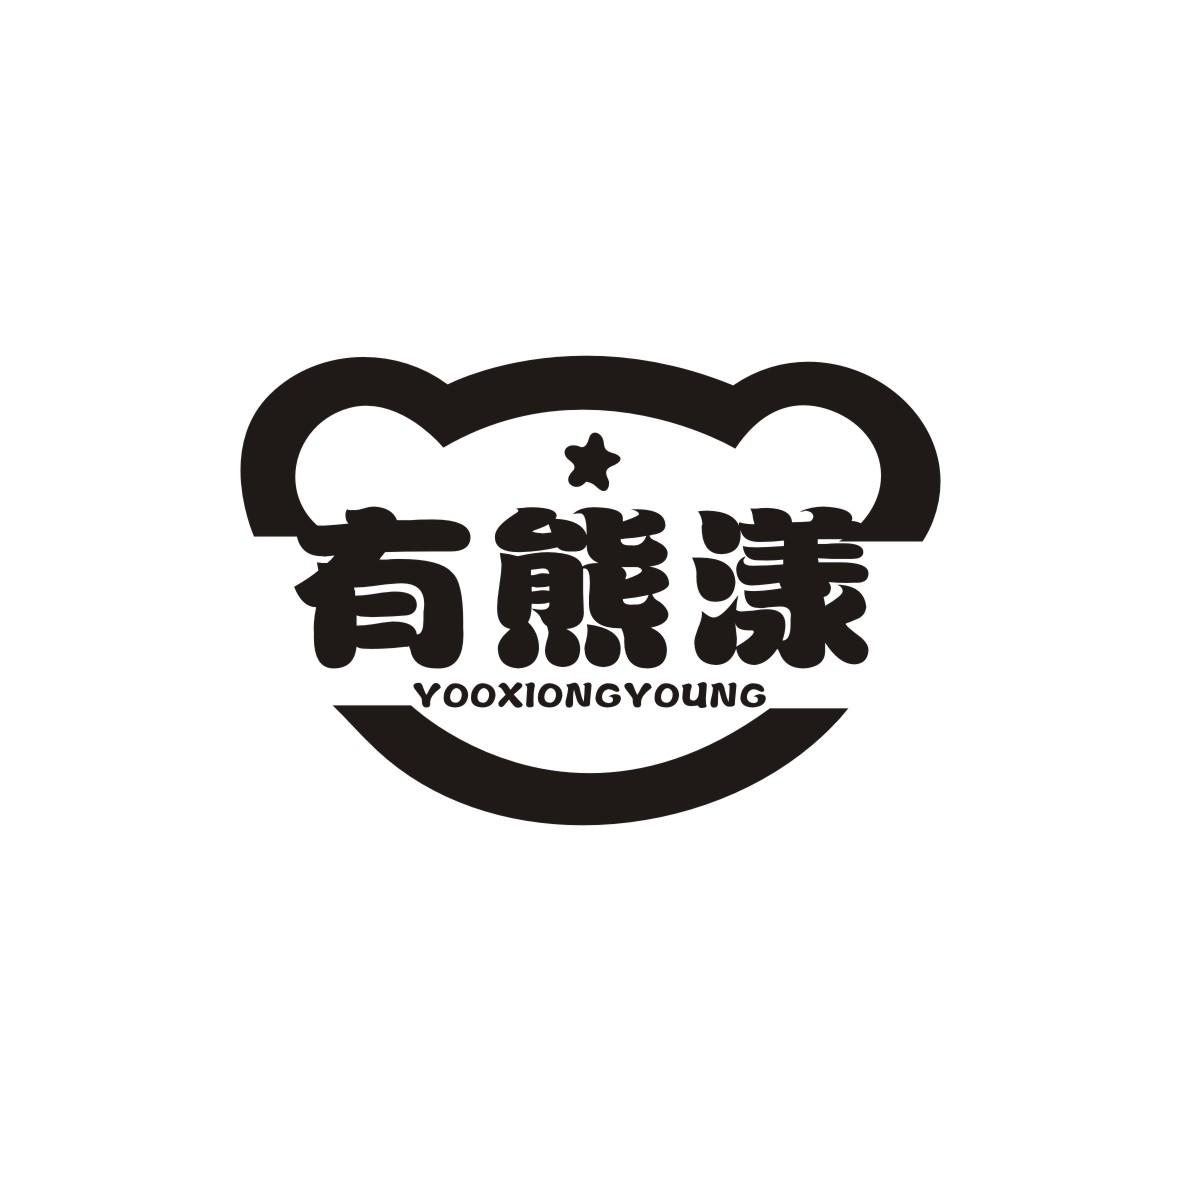  YOOXIONGYOUNG